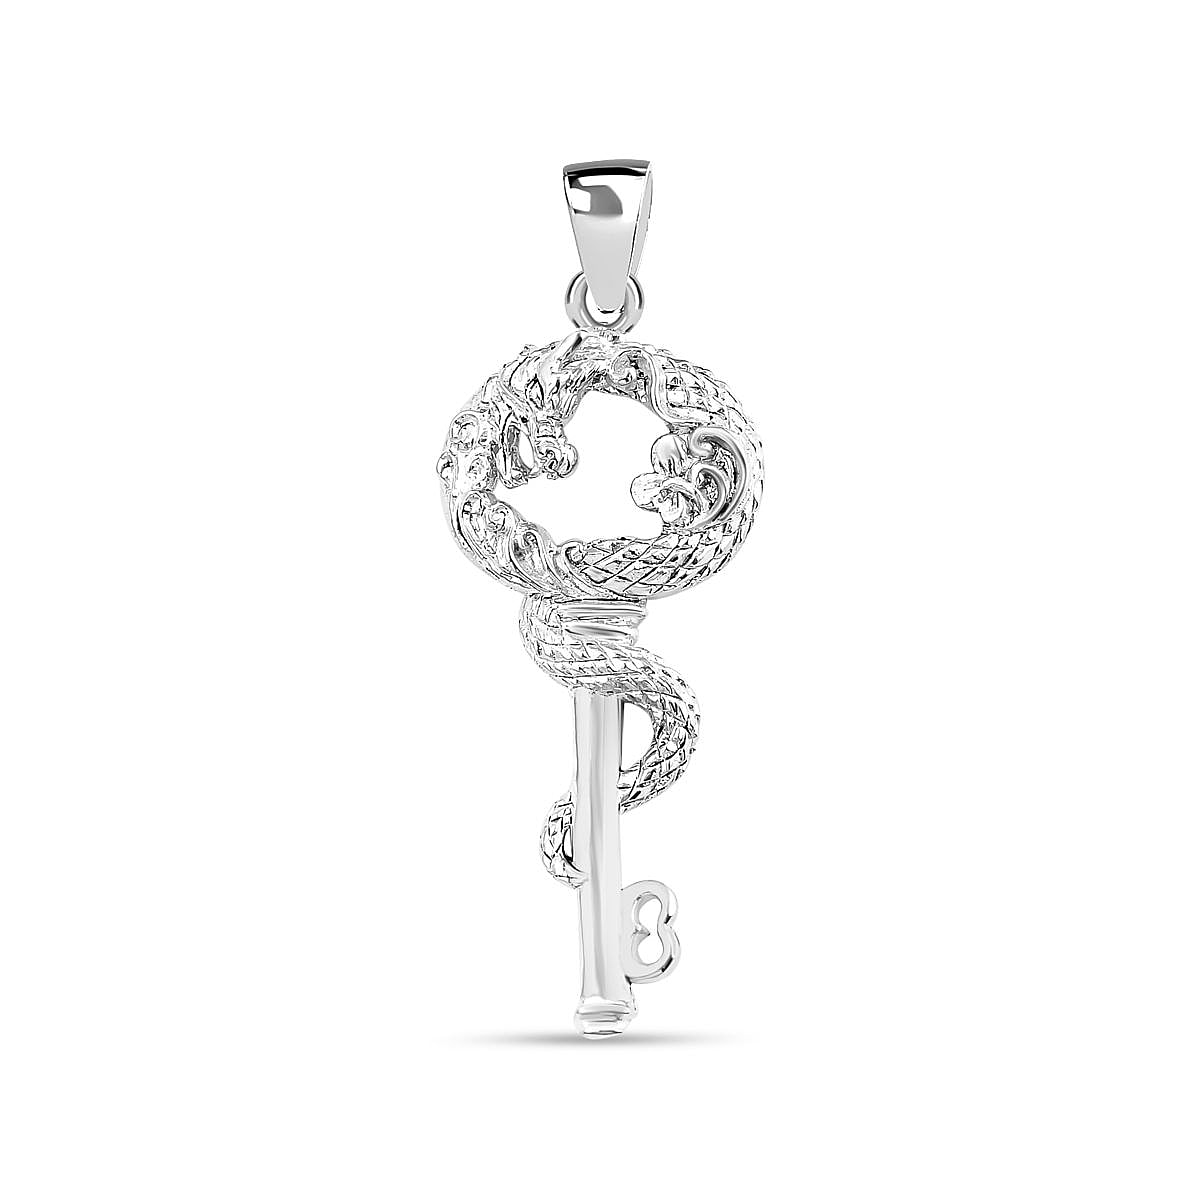 Royal Bali Collection - Sterling Silver Dragon Key Pendant, Silver Wt. 6.5 Gms